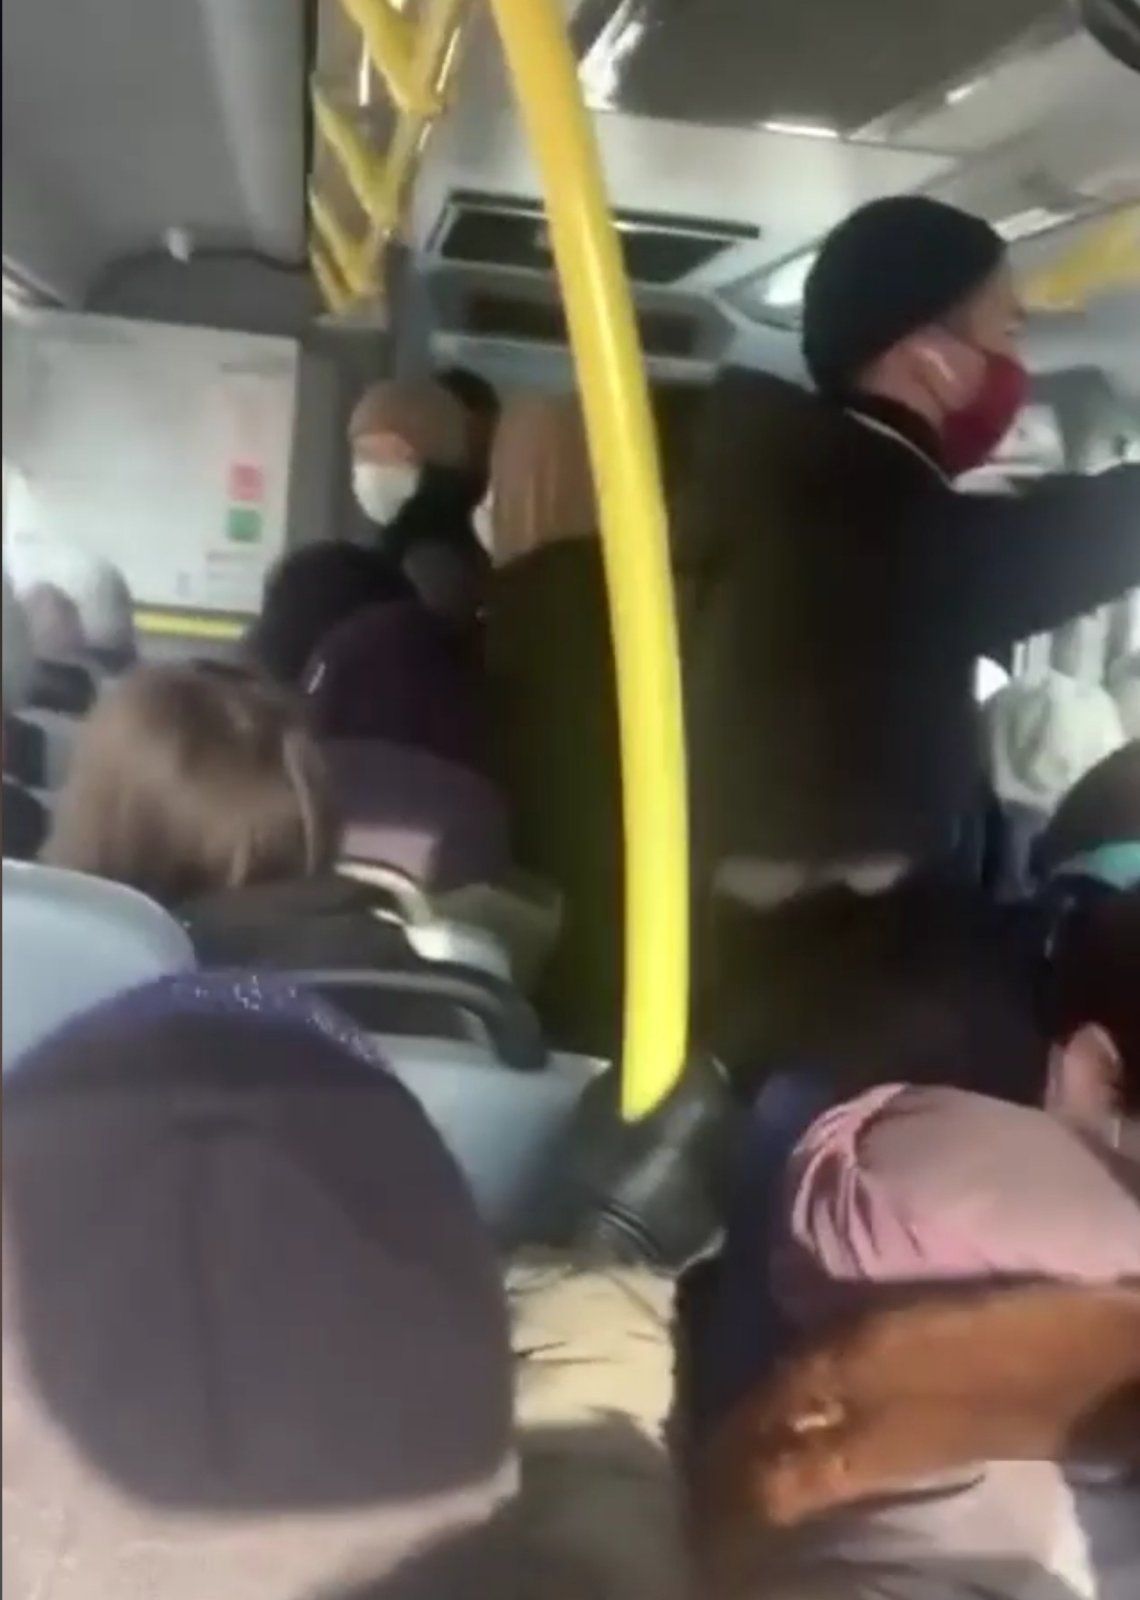 Фото Улан-Удэнка выложила видео давки людей в автобусе (ВИДЕО)